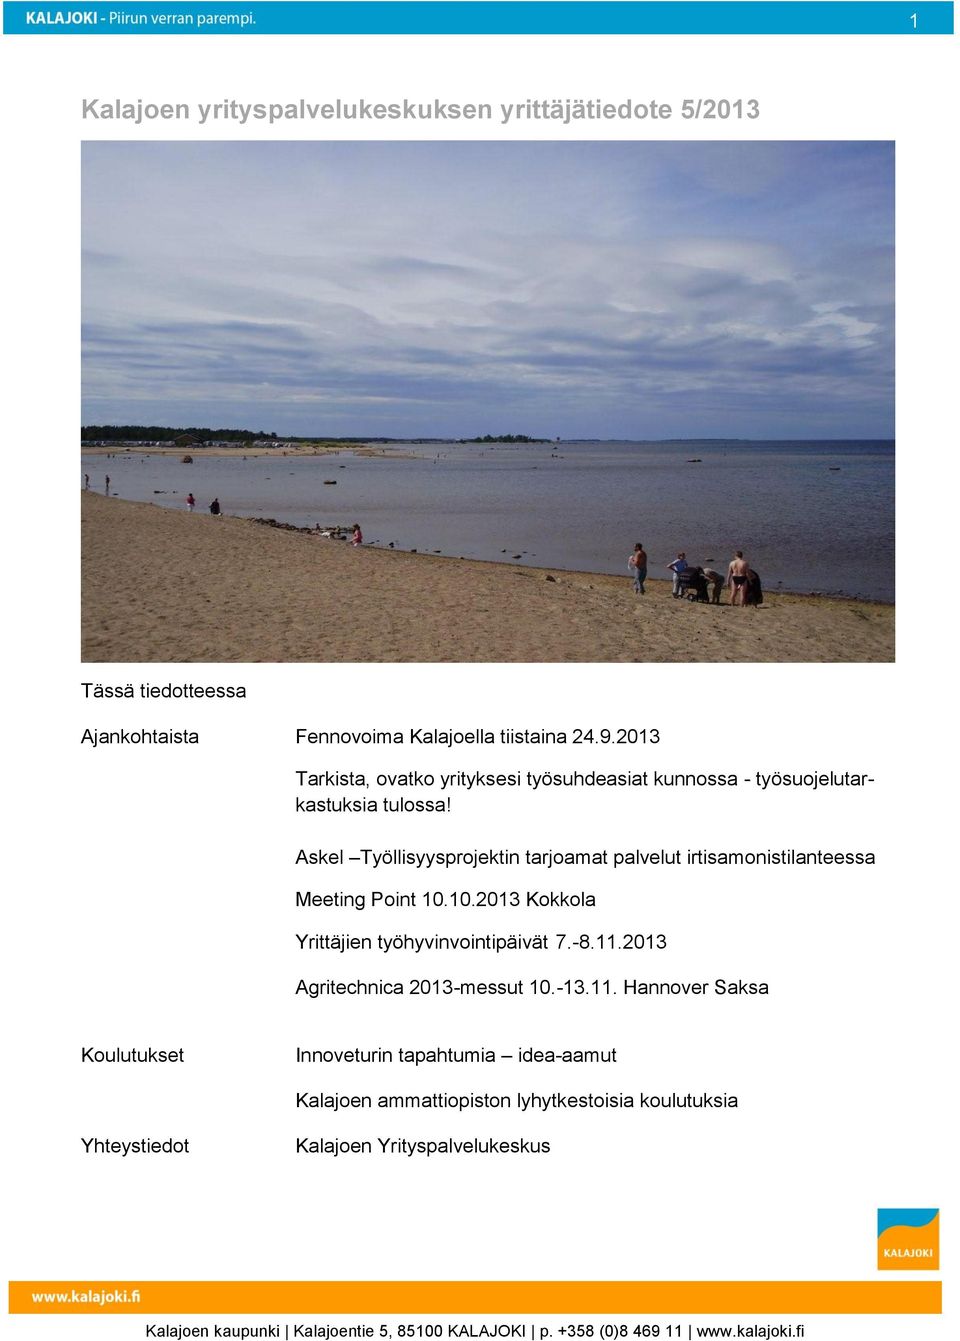 Askel Työllisyysprojektin tarjoamat palvelut irtisamonistilanteessa Meeting Point 10.10.2013 Kokkola Yrittäjien työhyvinvointipäivät 7.-8.